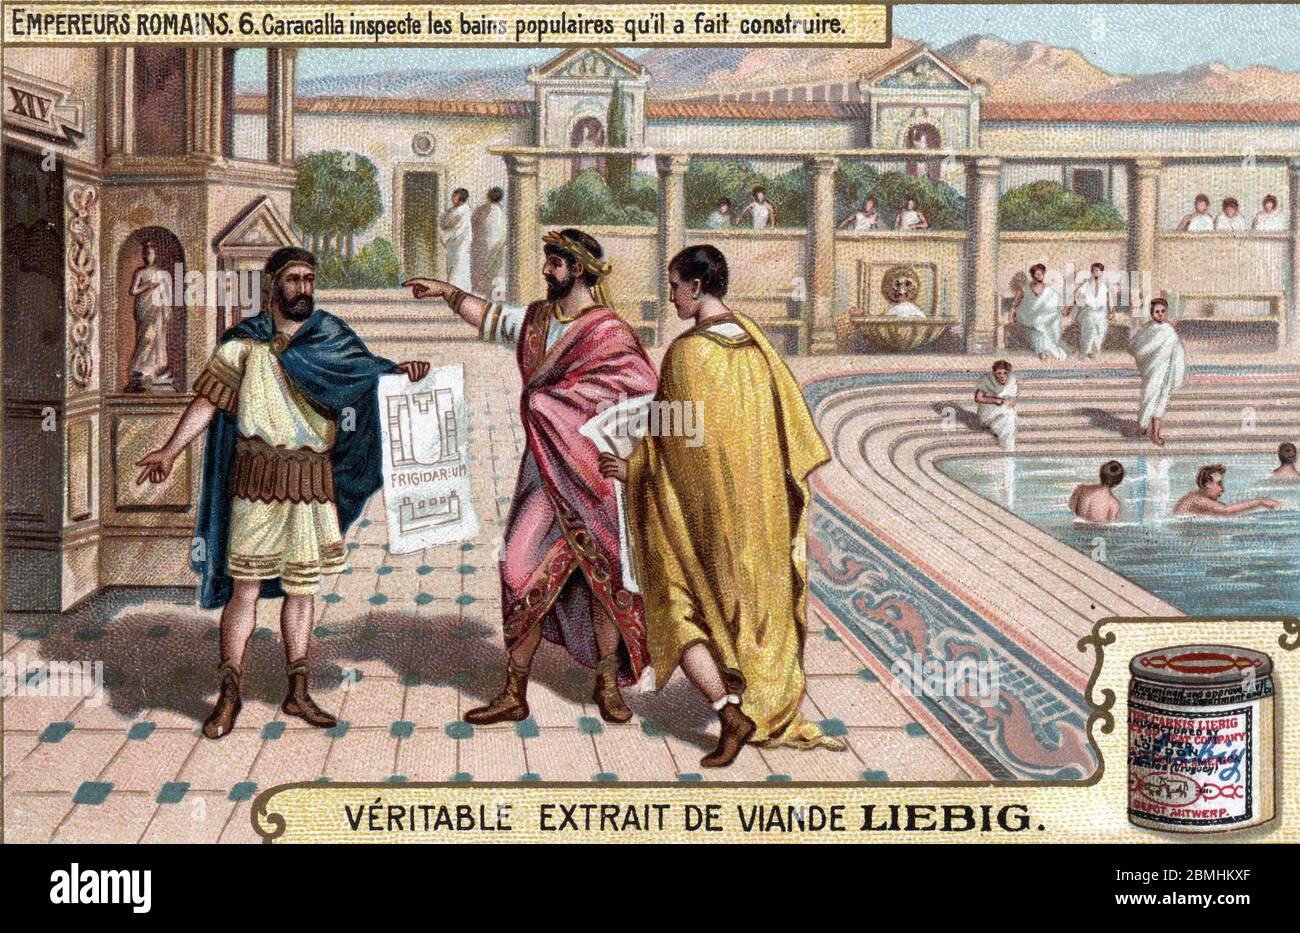 Rom antik : 'L'empereur romain Caracalla (188-217) controle et inspte les bains publics (thermes) qu'il a fait construire en 216 Apres JC a Rome, Stockfoto